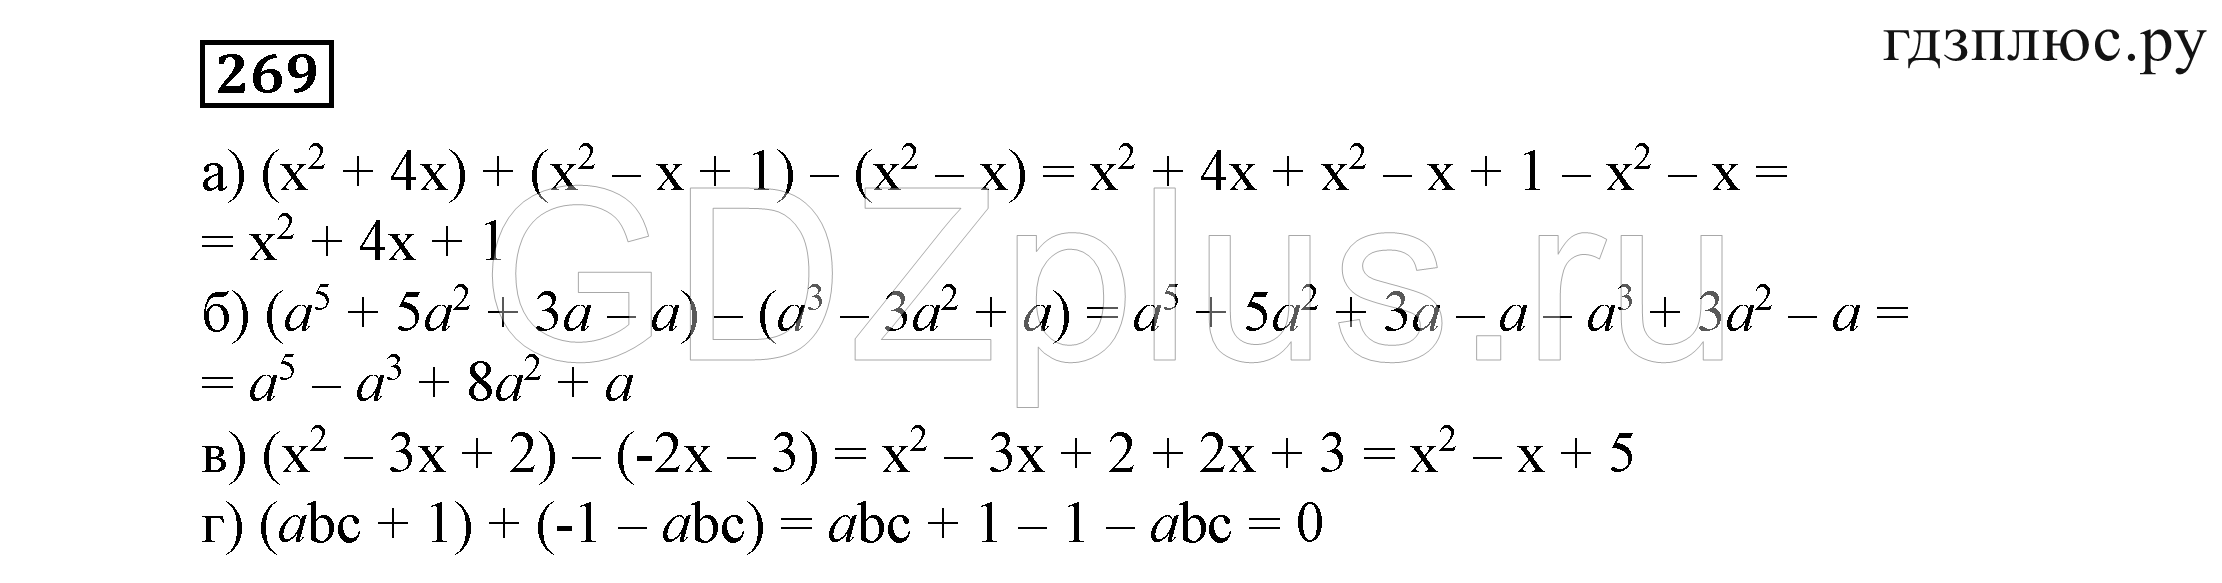 Решебник алгебра 7 класс никольского. Алгебра седьмой класс номер 269.